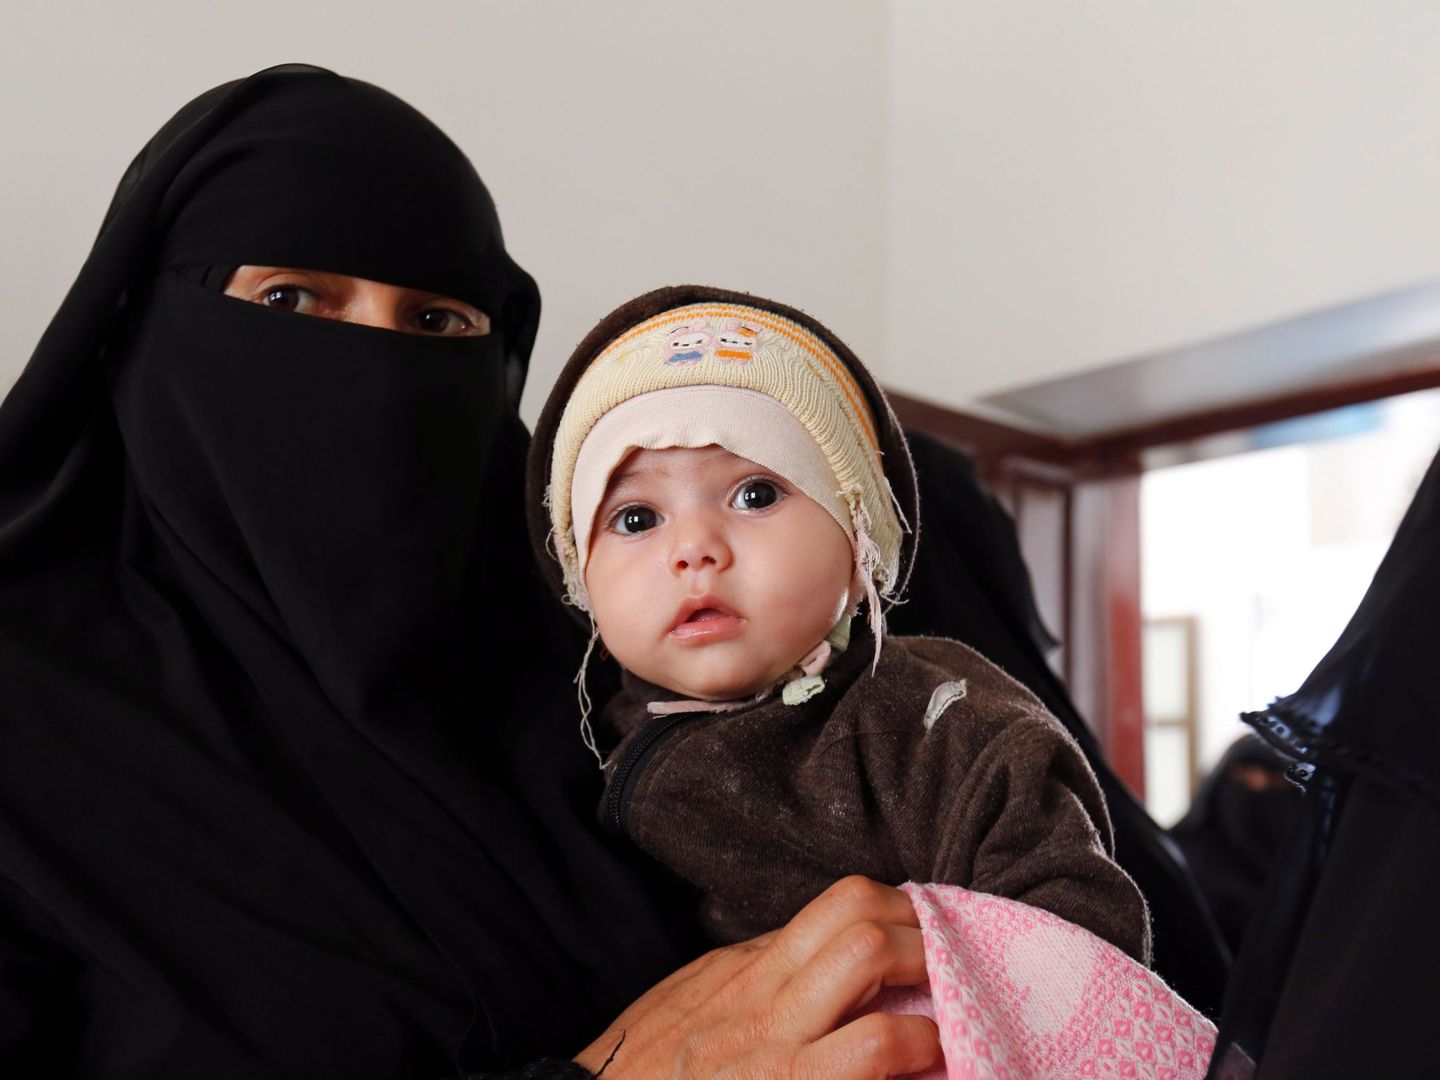 Una mujer espera a que su hijo reciba la vacuna contra la polio en un centro de salud, en Saná, Yemen (Yahya Arhab / EFE)